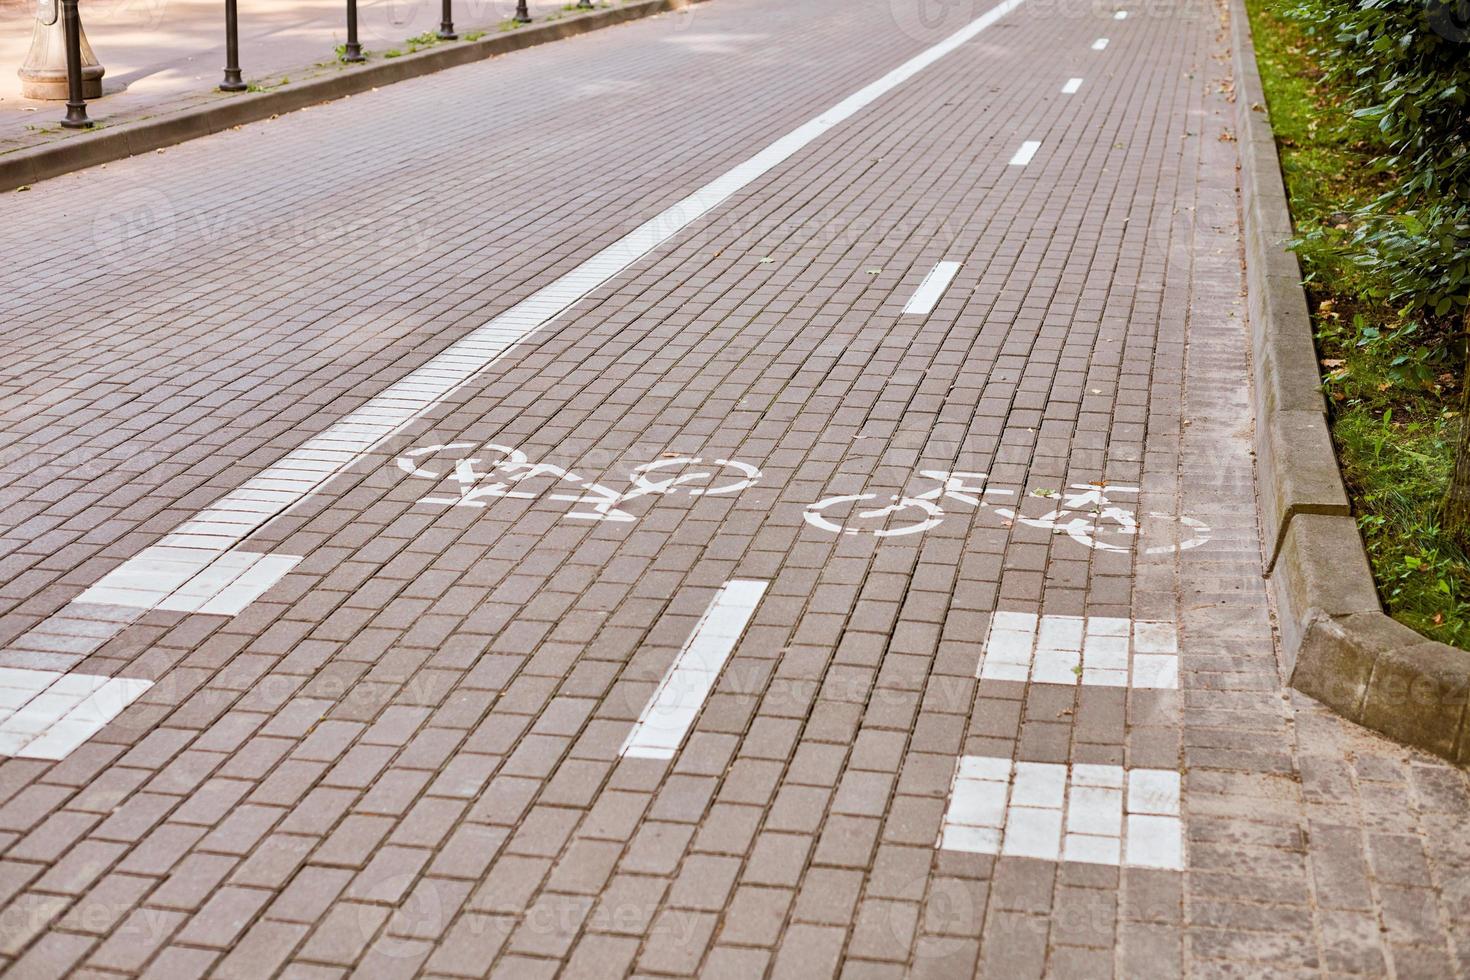 carril bici bidireccional, carril bici marcado en la acera, señal de bicicleta pintada de blanco en la carretera, símbolo de ciclo foto